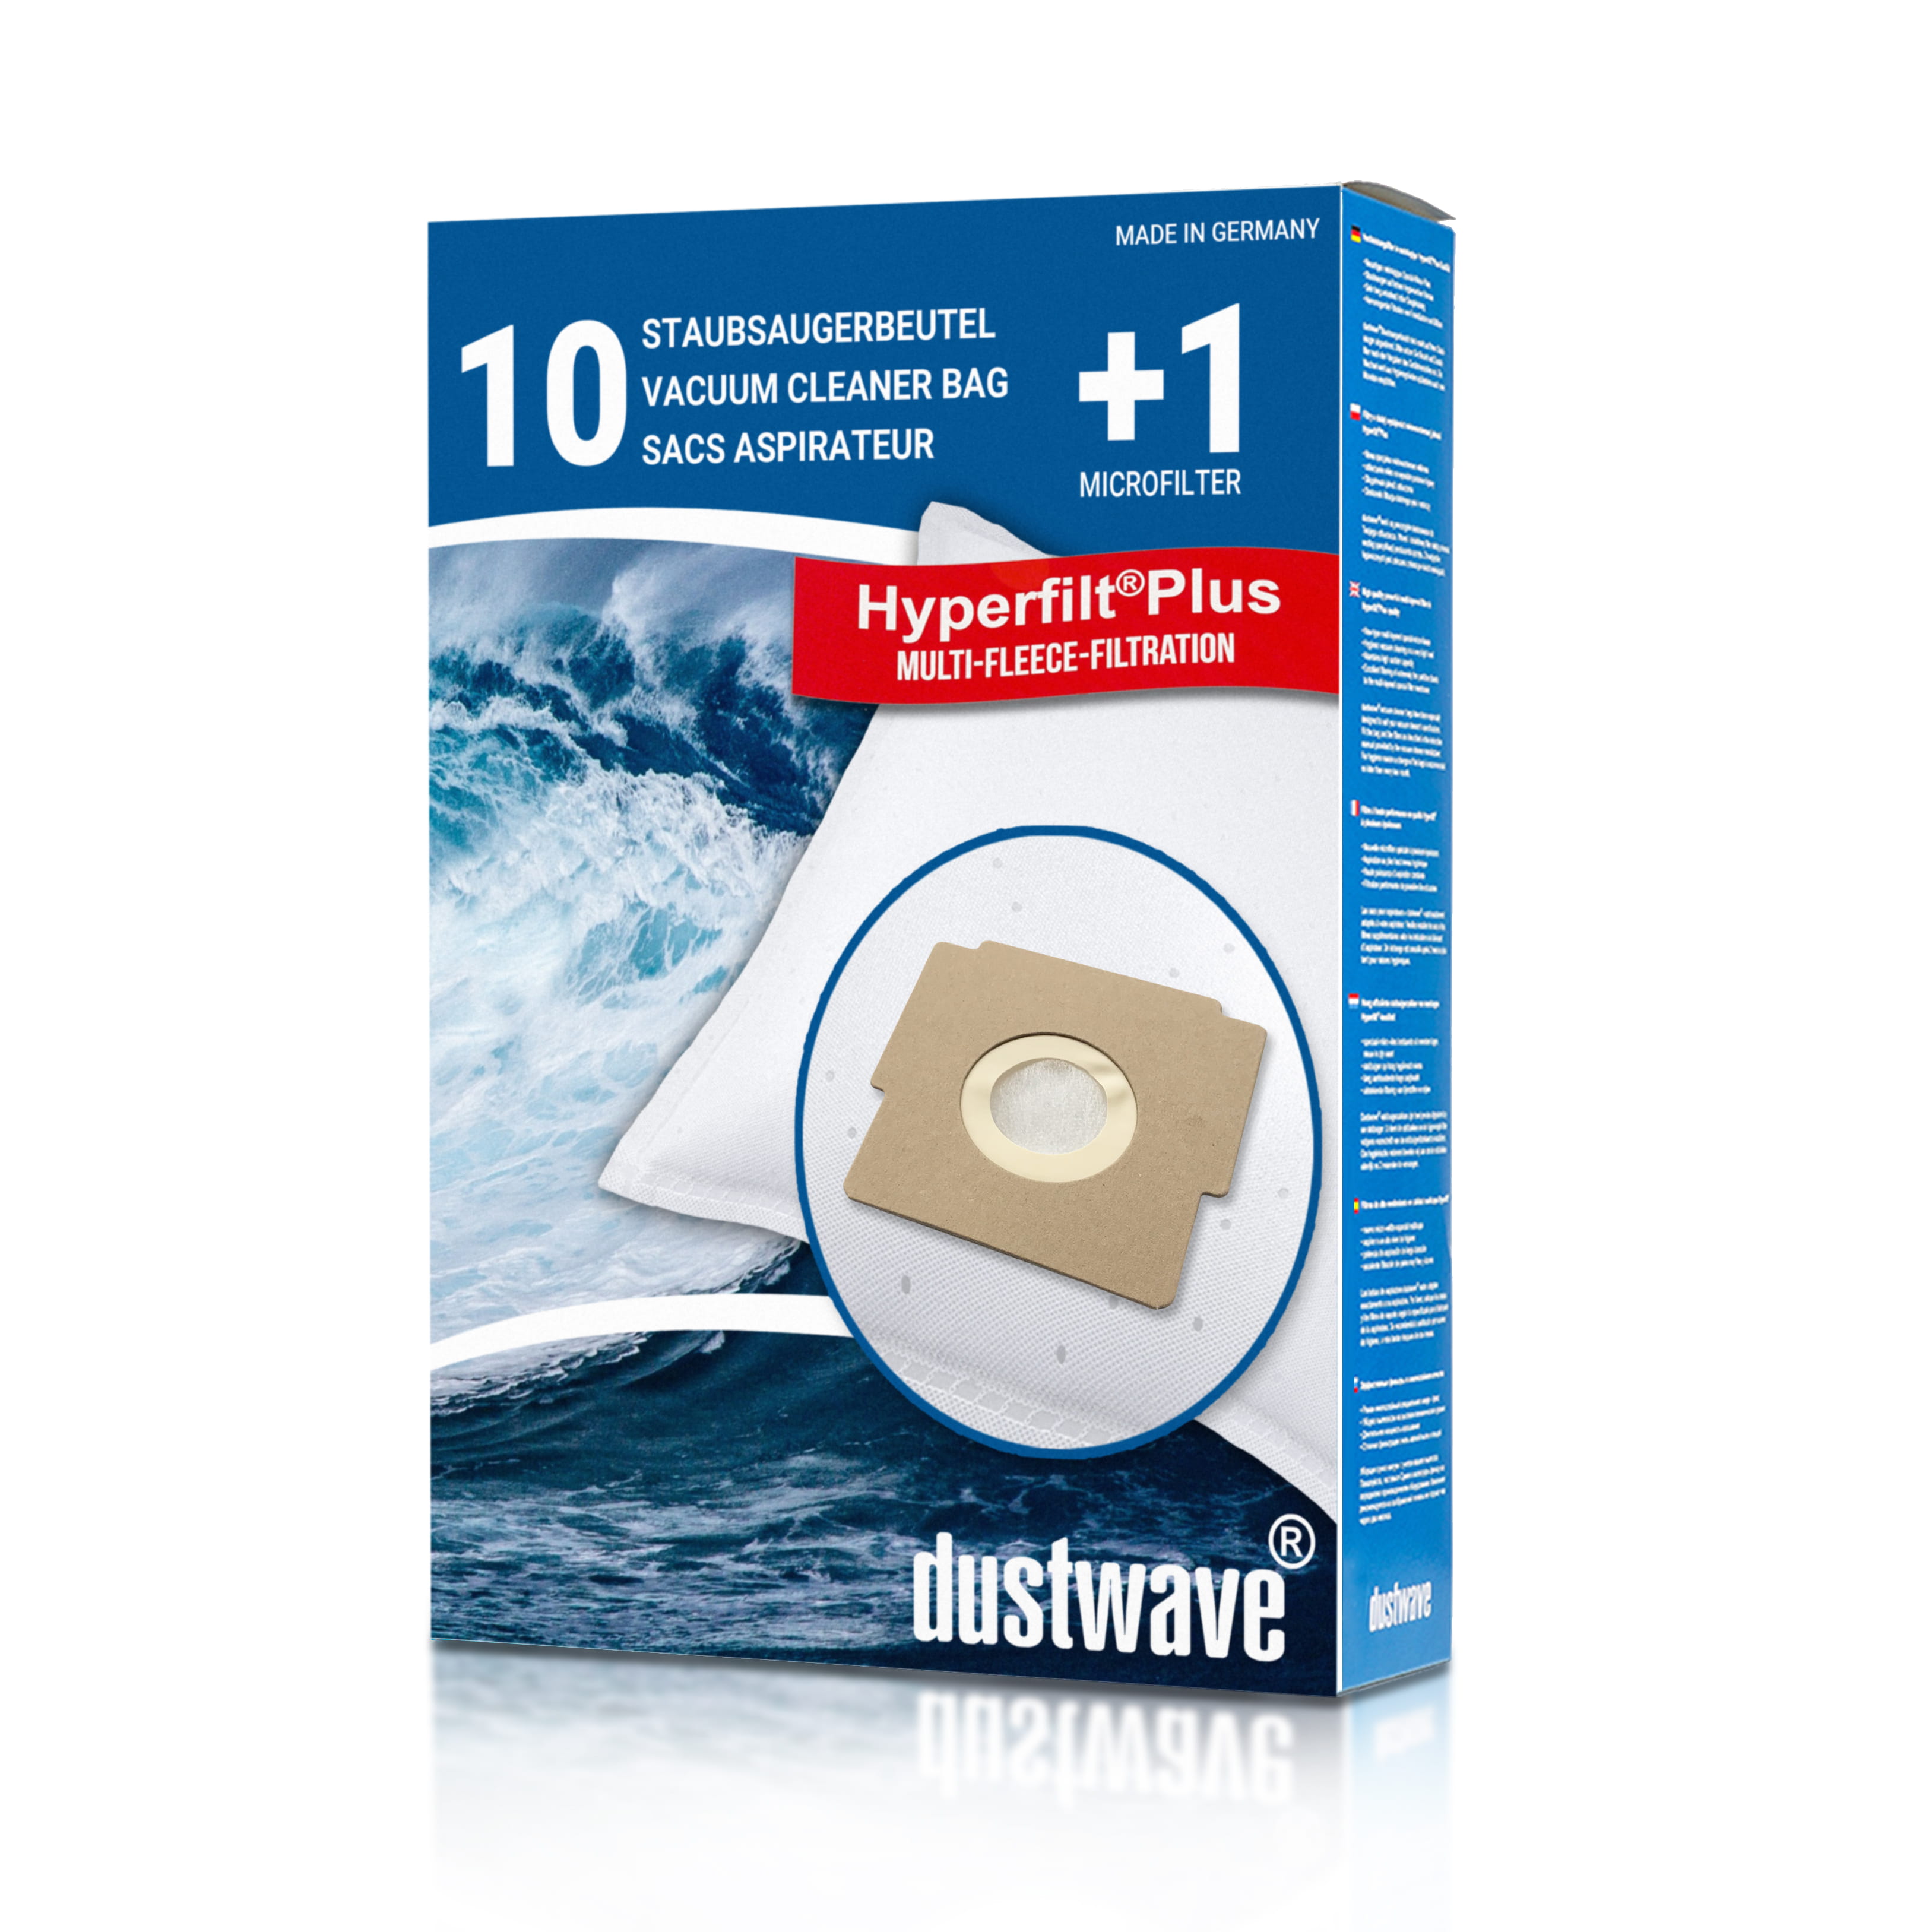 Dustwave® 10 Staubsaugerbeutel für Blue Sky AP 1400, 1500 - hocheffizient, mehrlagiges Mikrovlies mit Hygieneverschluss - Made in Germany